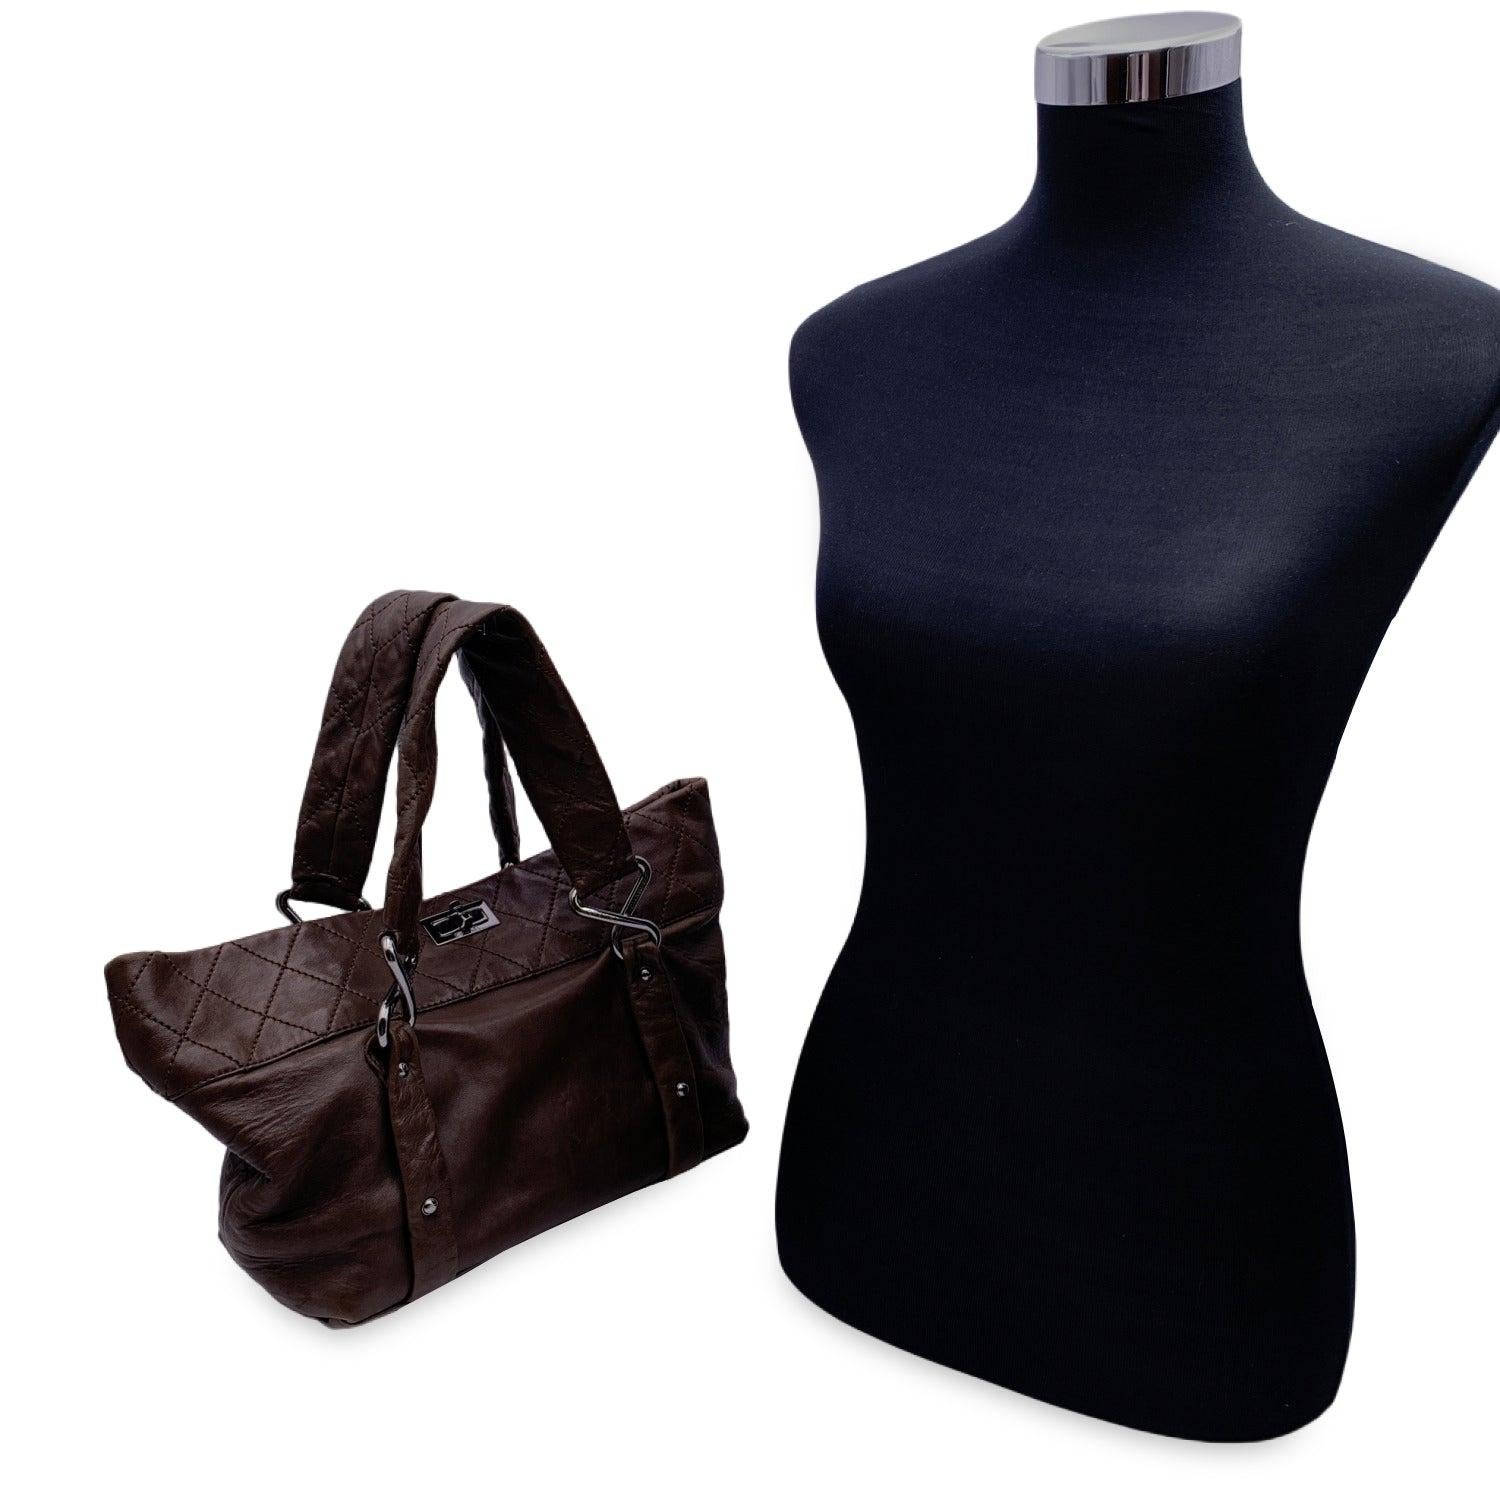 Chanel 'Eight Knots' Tote Bag in Braun aus der Kollektion 2006-2007. Die Tasche ist aus braunem Lammleder gefertigt und teilweise gesteppt. Sie verfügt über einen Mademoiselle-Drehverschluss an der Oberseite, doppelte Henkel, gedrehte